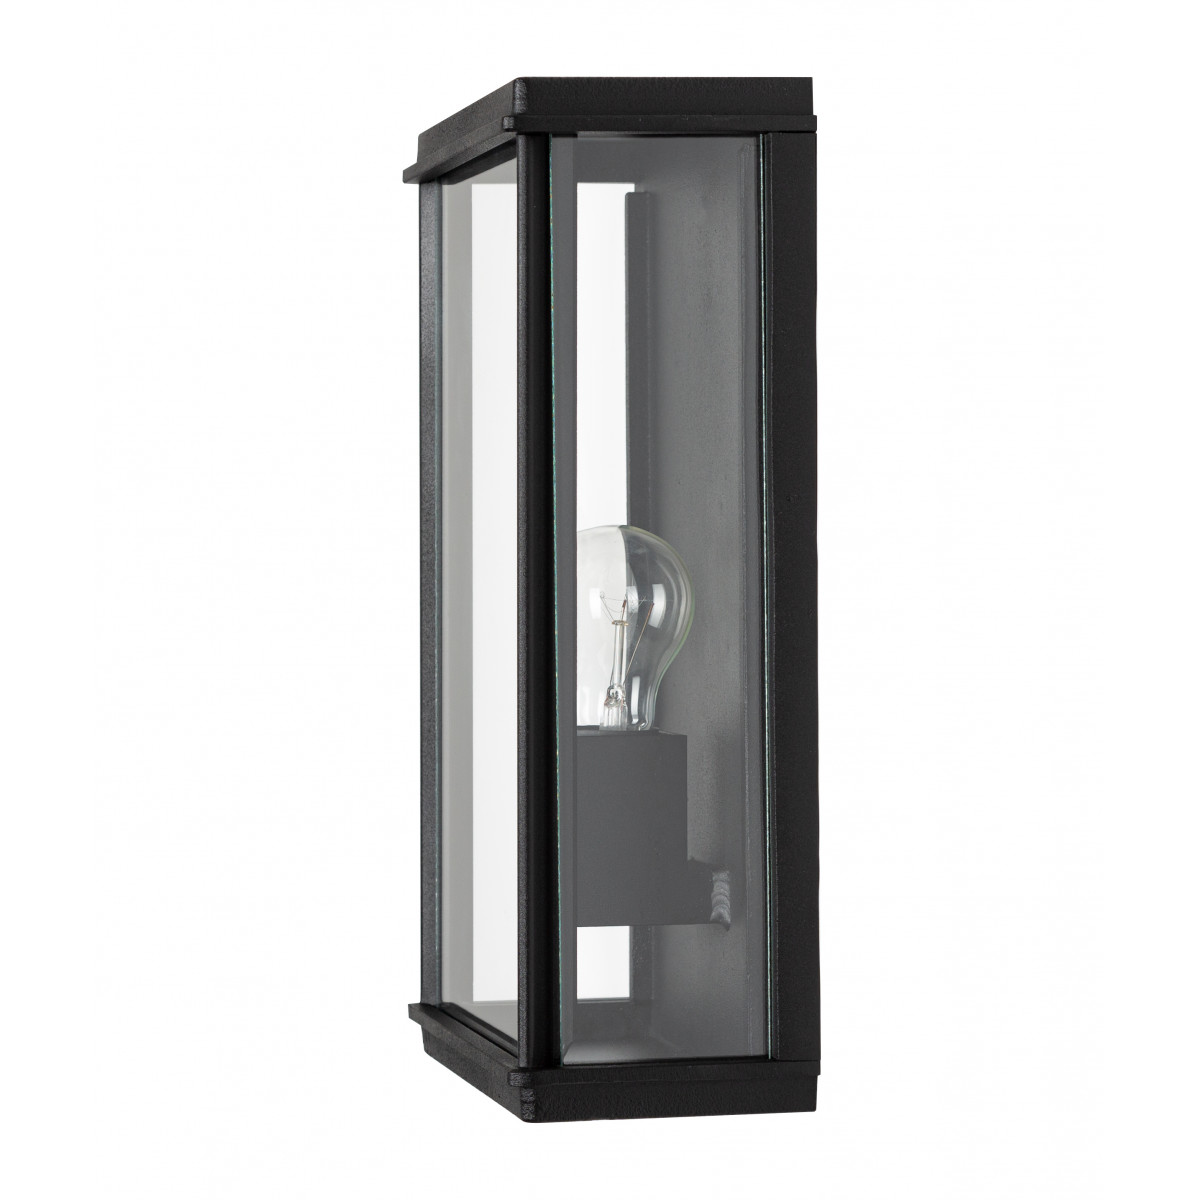 Buitenlamp Capital XL plat exclusieve buitenverlichting strak klassiek van KS Verlichting met de hand vervaardigde wandverlichting van hoge kwaliteit